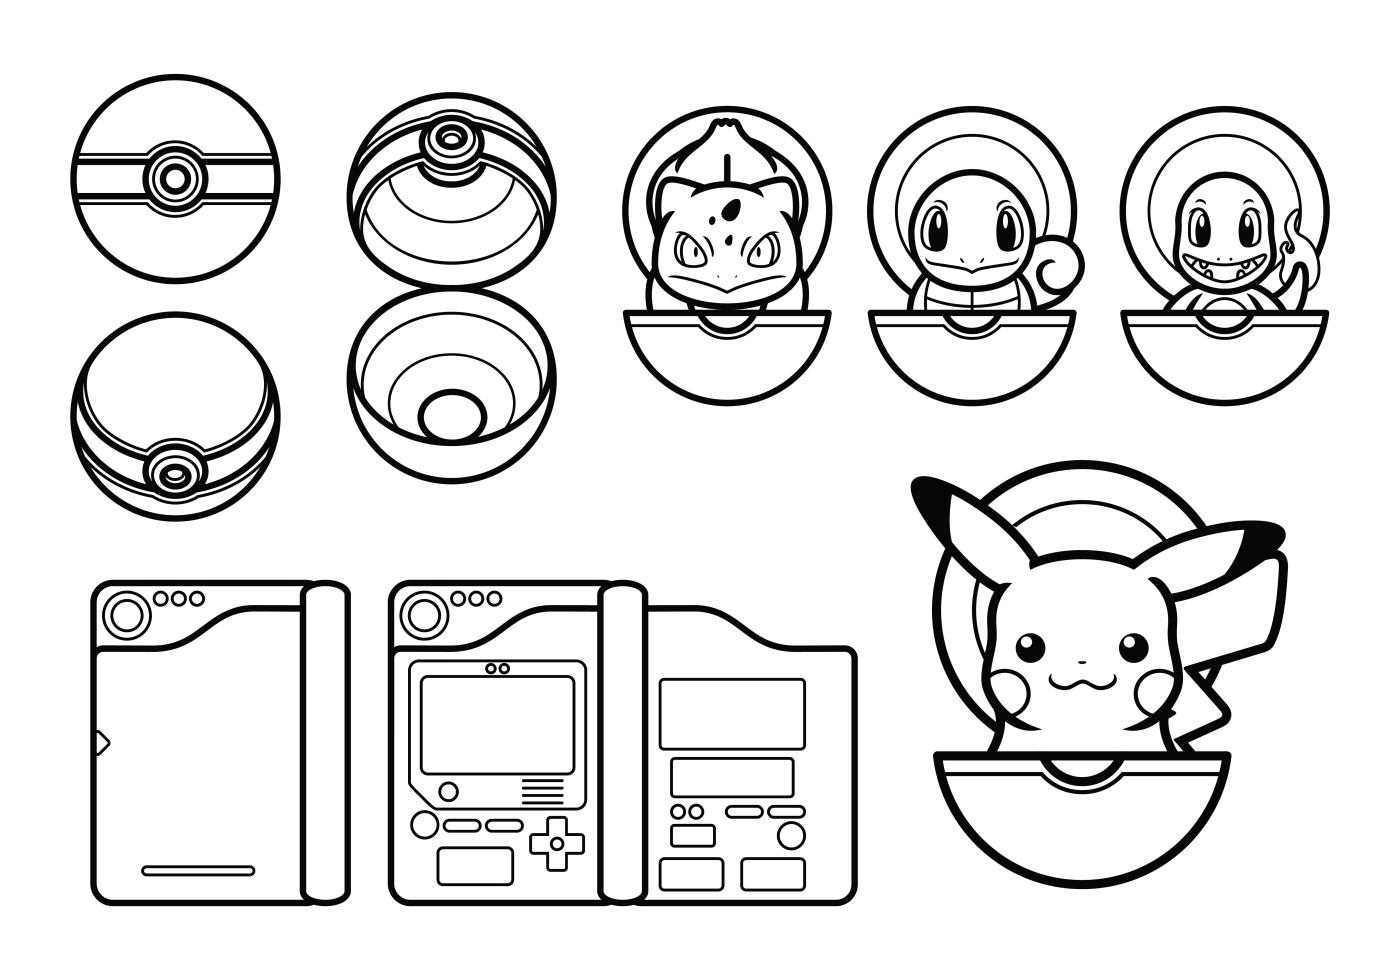 ilustração do projeto do ícone do contorno do vetor pokemon. símbolo de  jogo no arquivo eps 10 de fundo branco 17486349 Vetor no Vecteezy